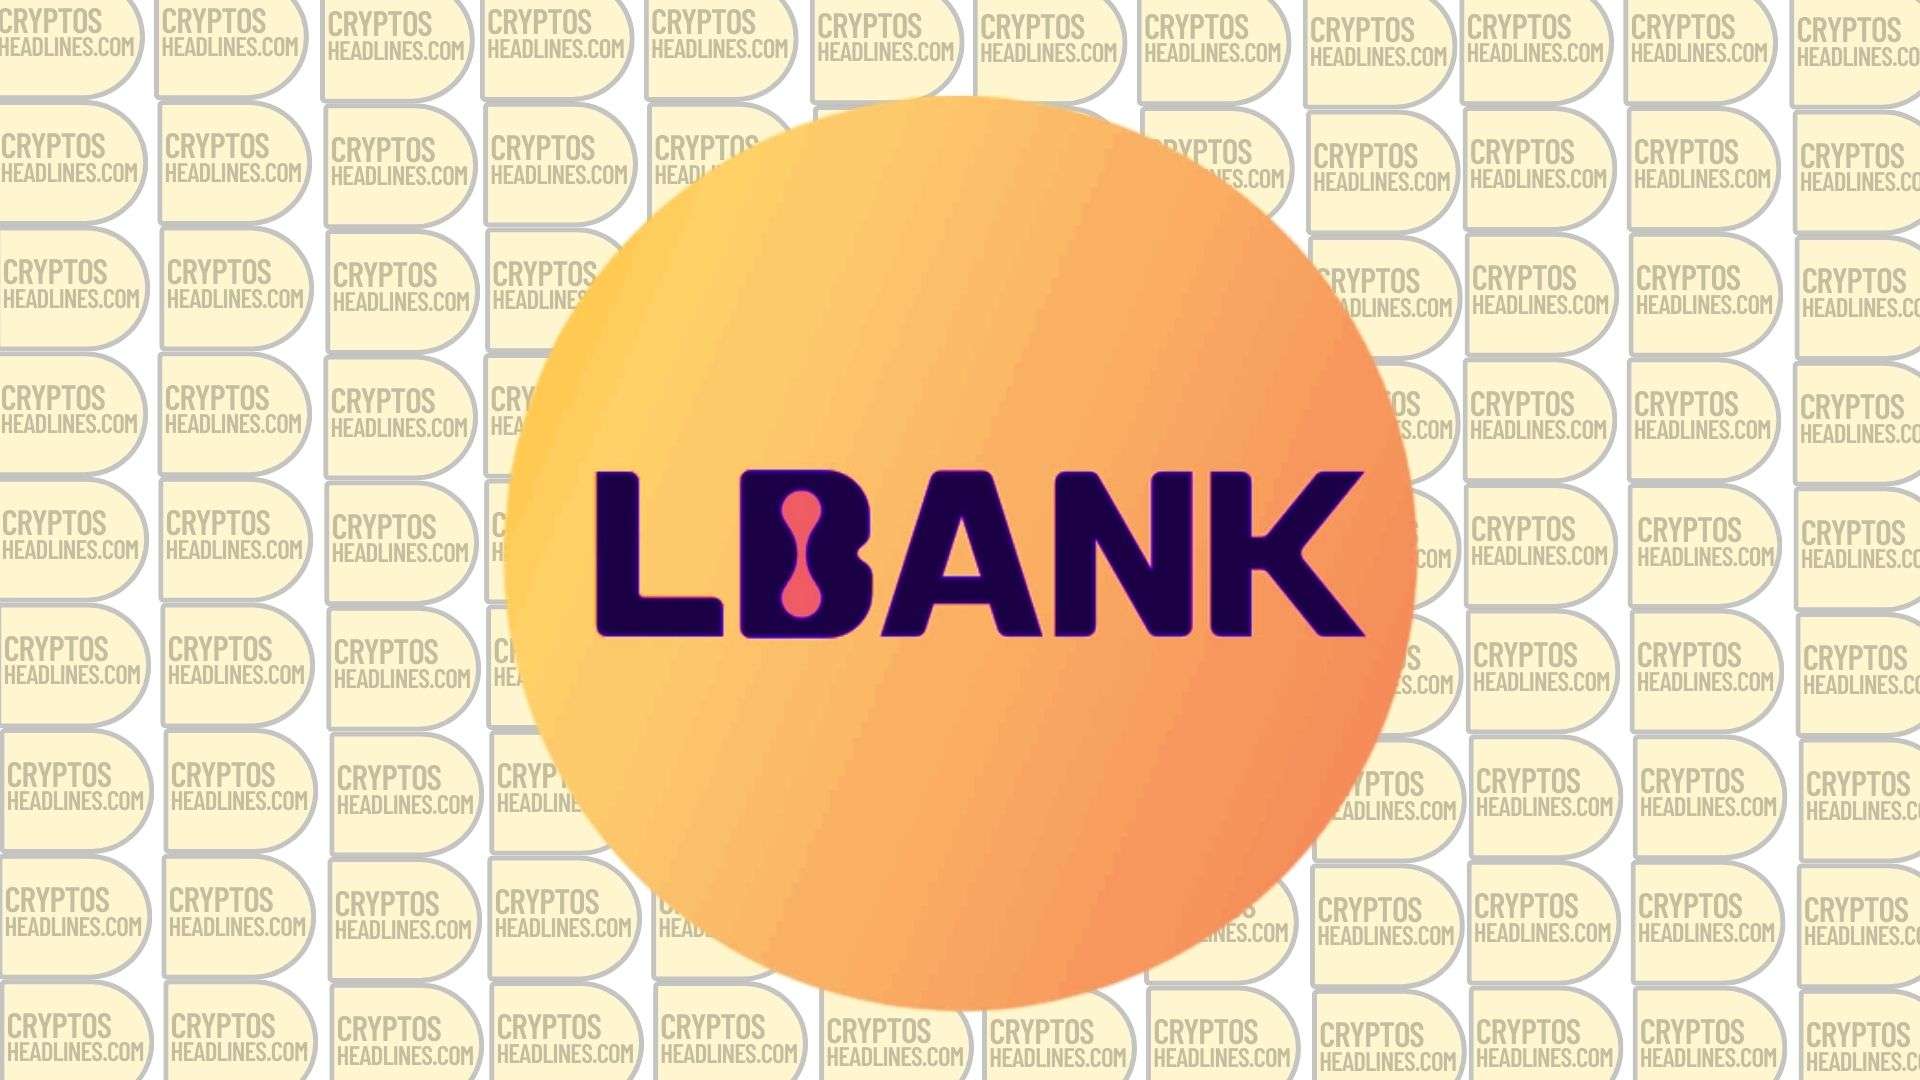 lbank exchange